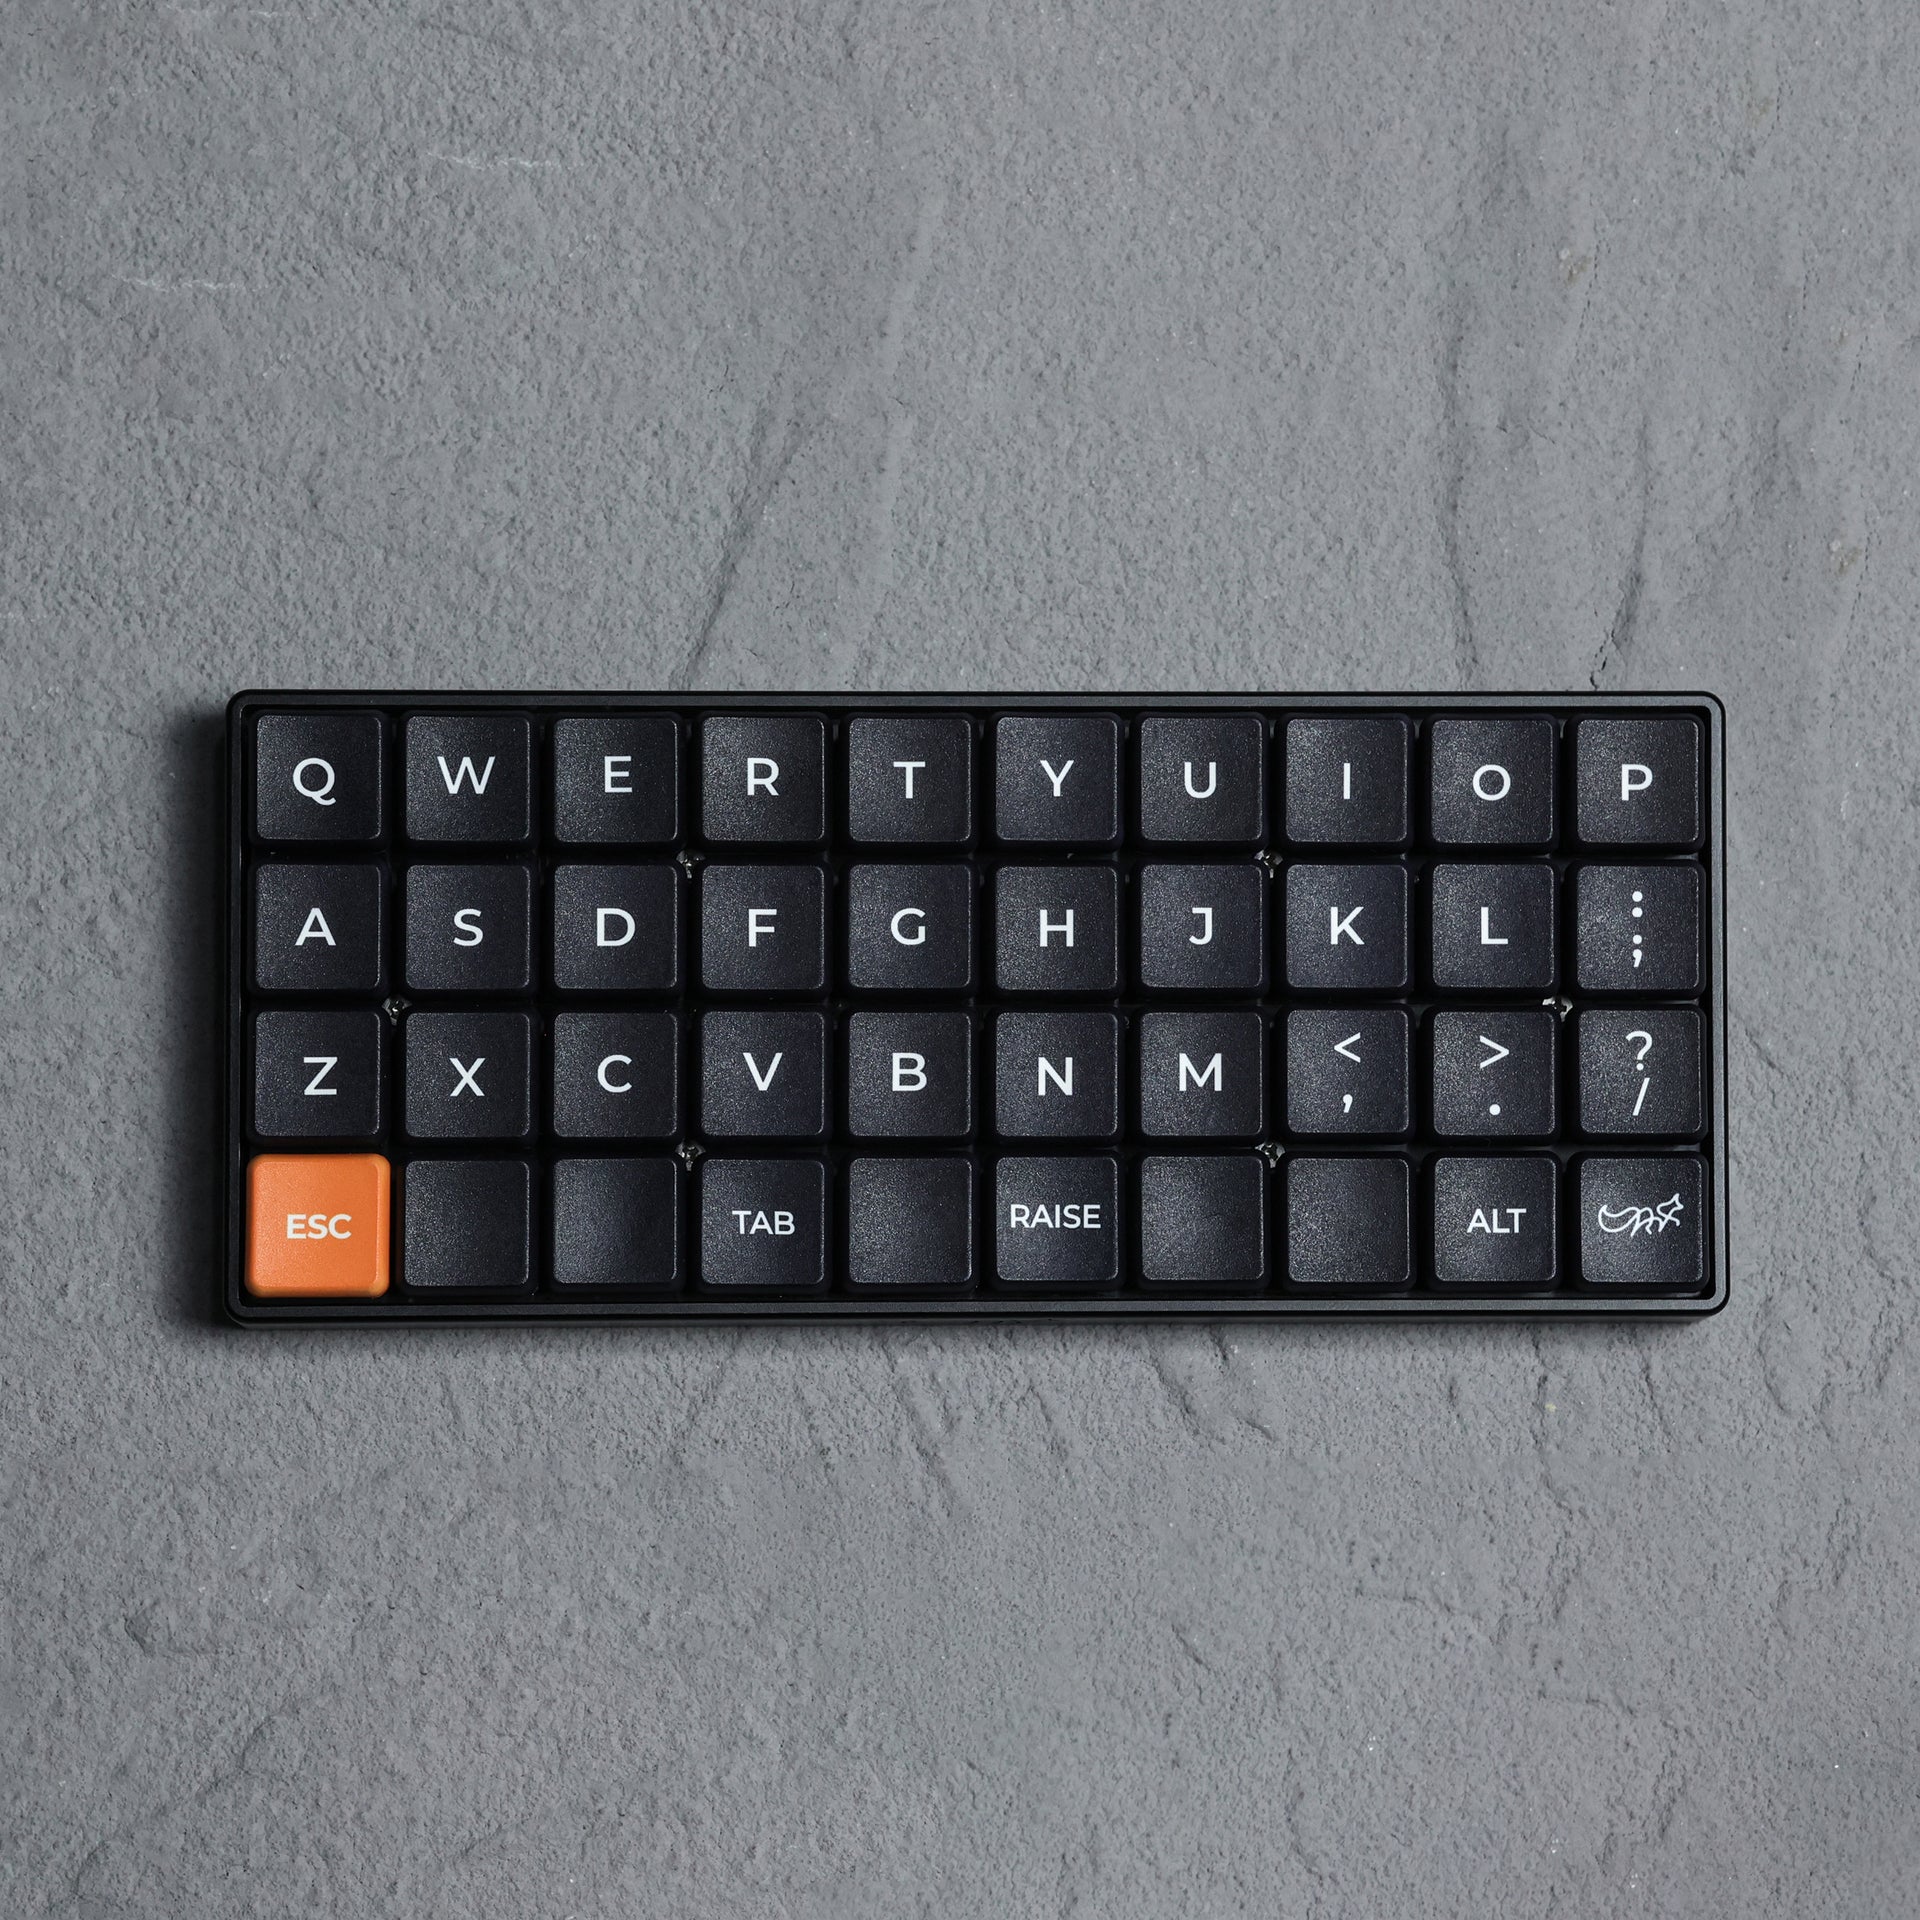 Chosfox x Sporewoh | bancouver40 Keyboard Kit-Chosfox